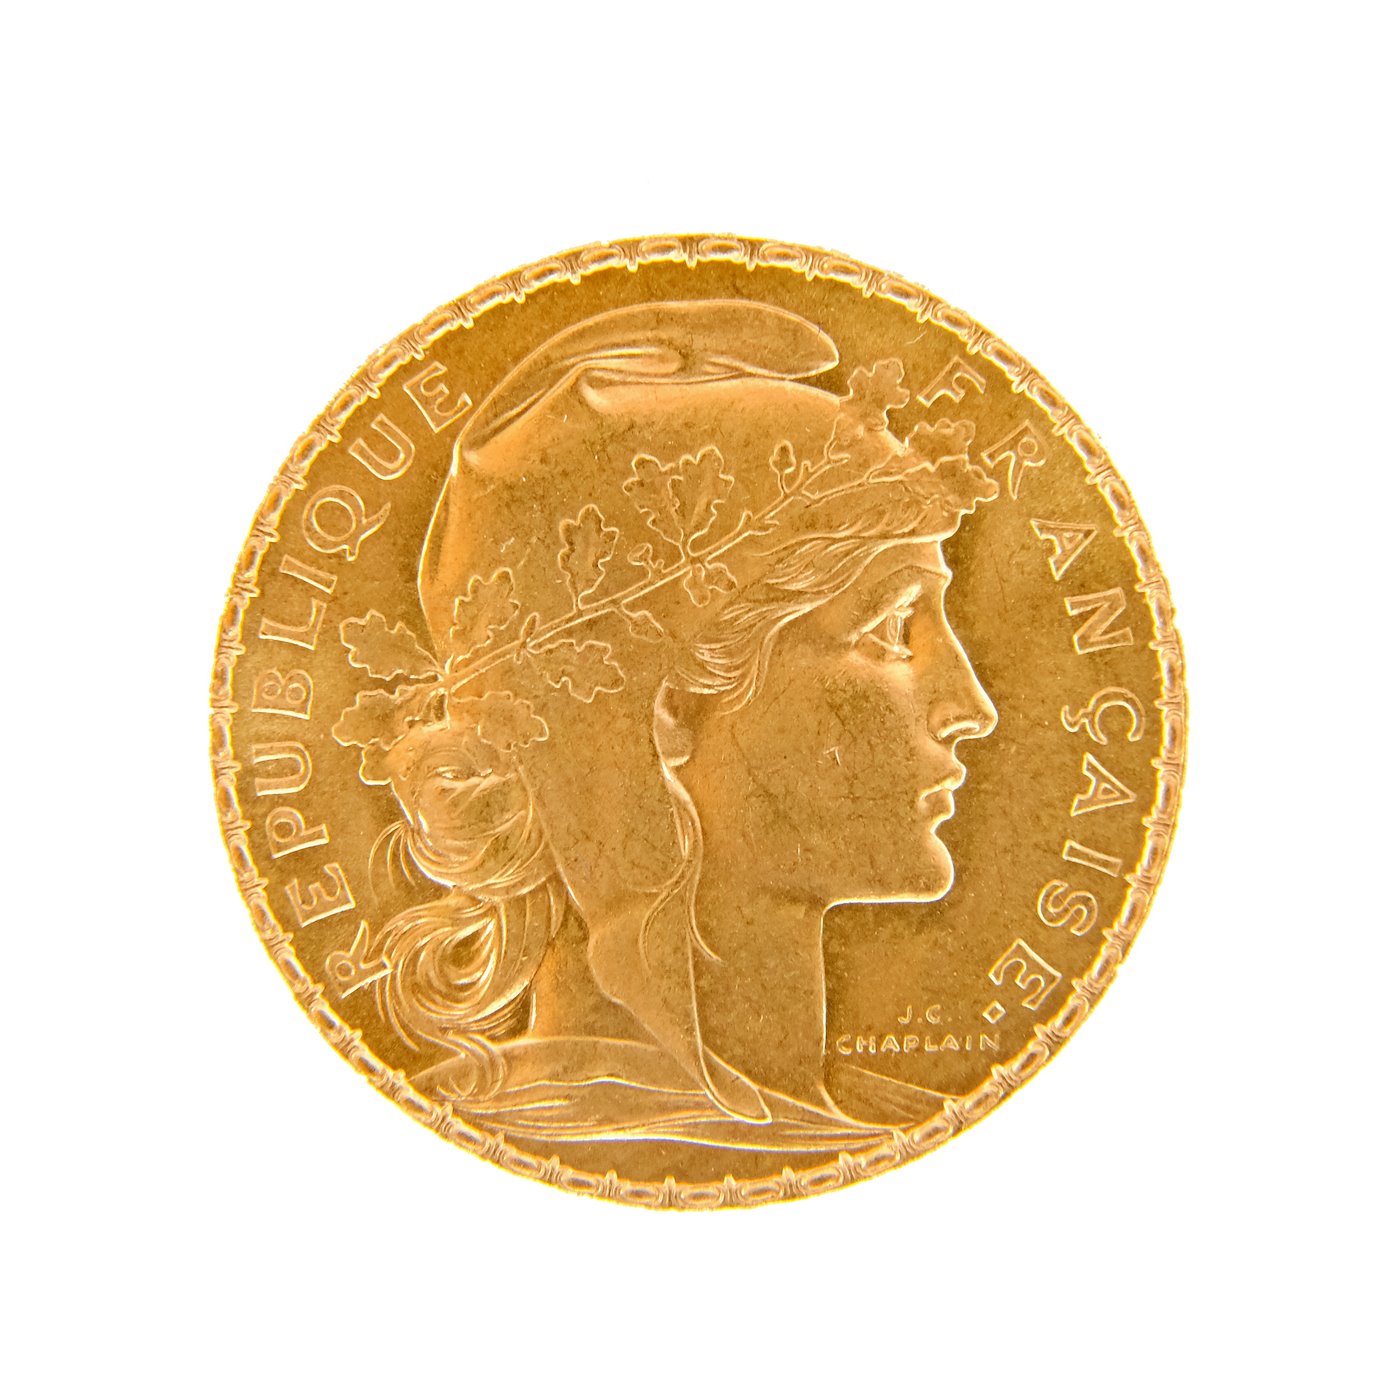 .. - Francie zlatý 20 frank ROOSTER 1913, zlato 900/1000, hrubá hmotnost 6,44g